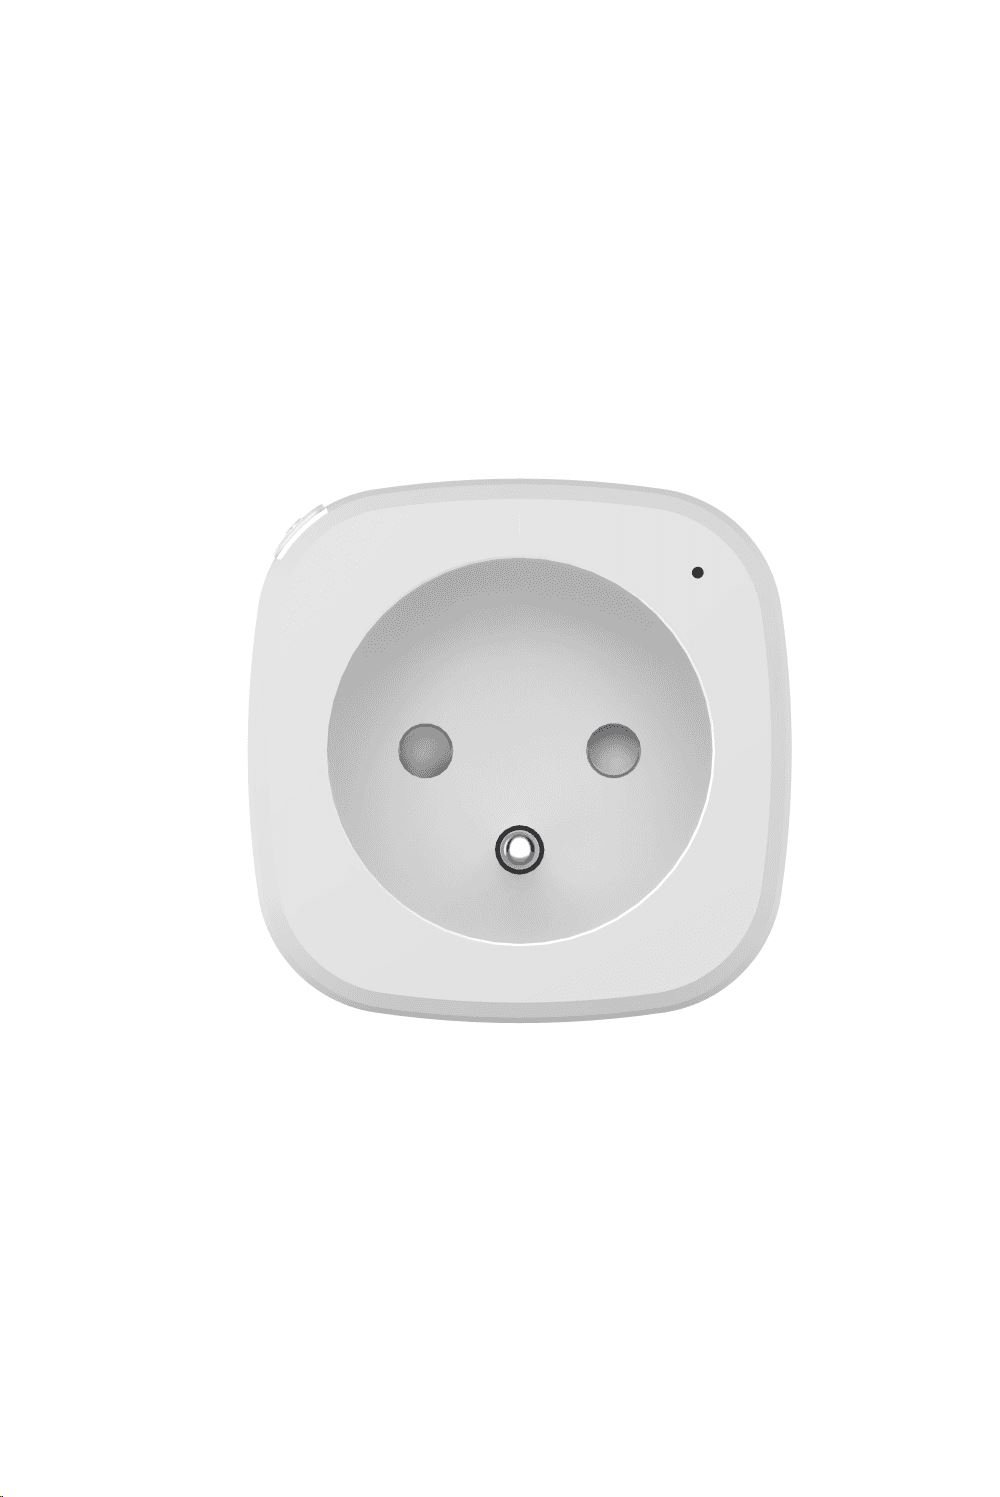 Woox Smart Home okos dugalj fehér (R4152)